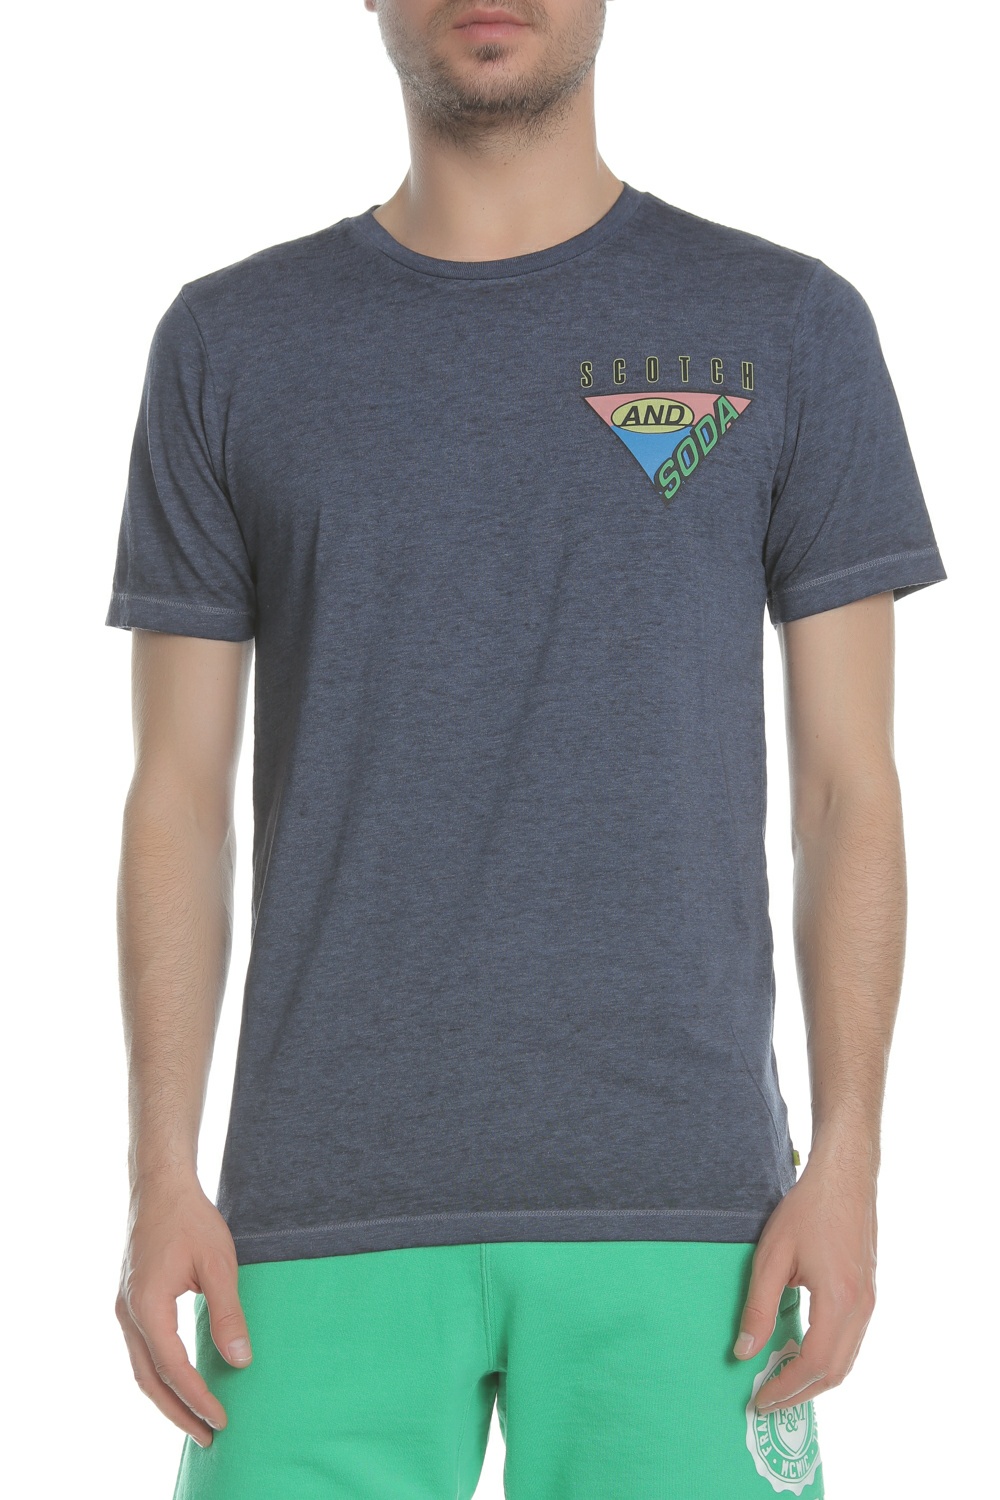 Ανδρικά/Ρούχα/Μπλούζες/Κοντομάνικες SCOTCH & SODA - Ανδρική μπλούζα Surf-inspired logo artwork tee μπλε